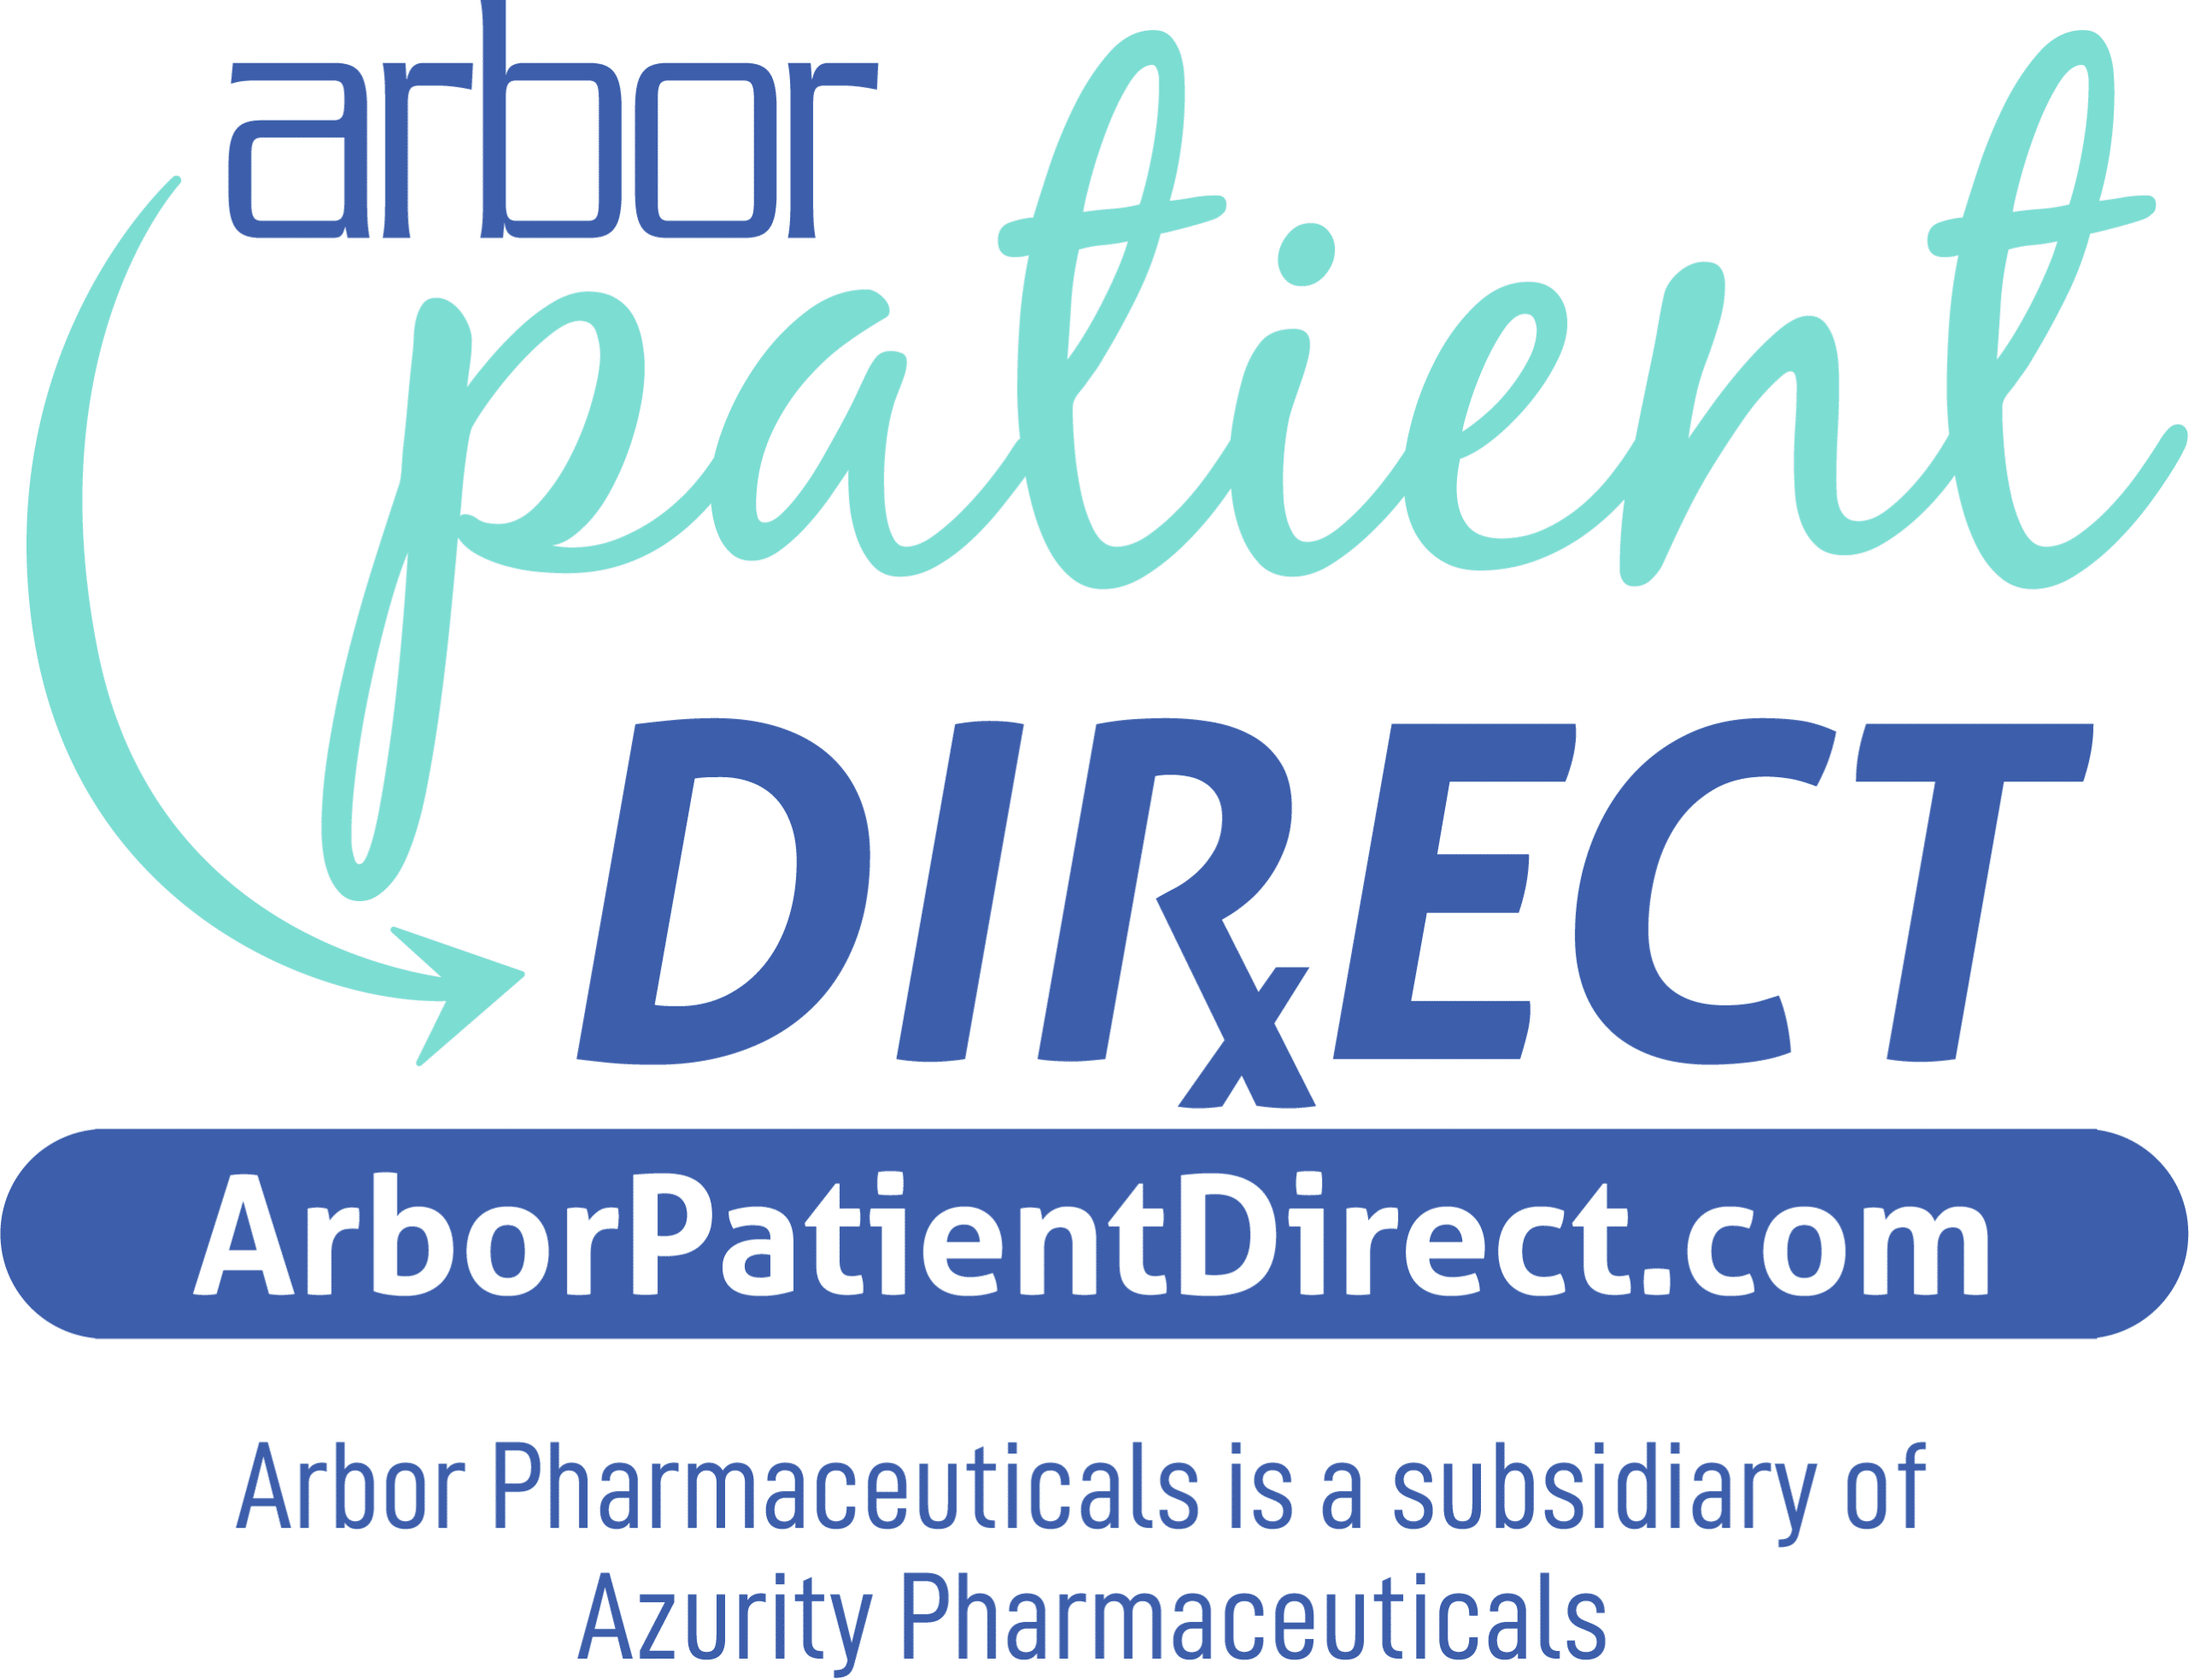 patient-direct-banner